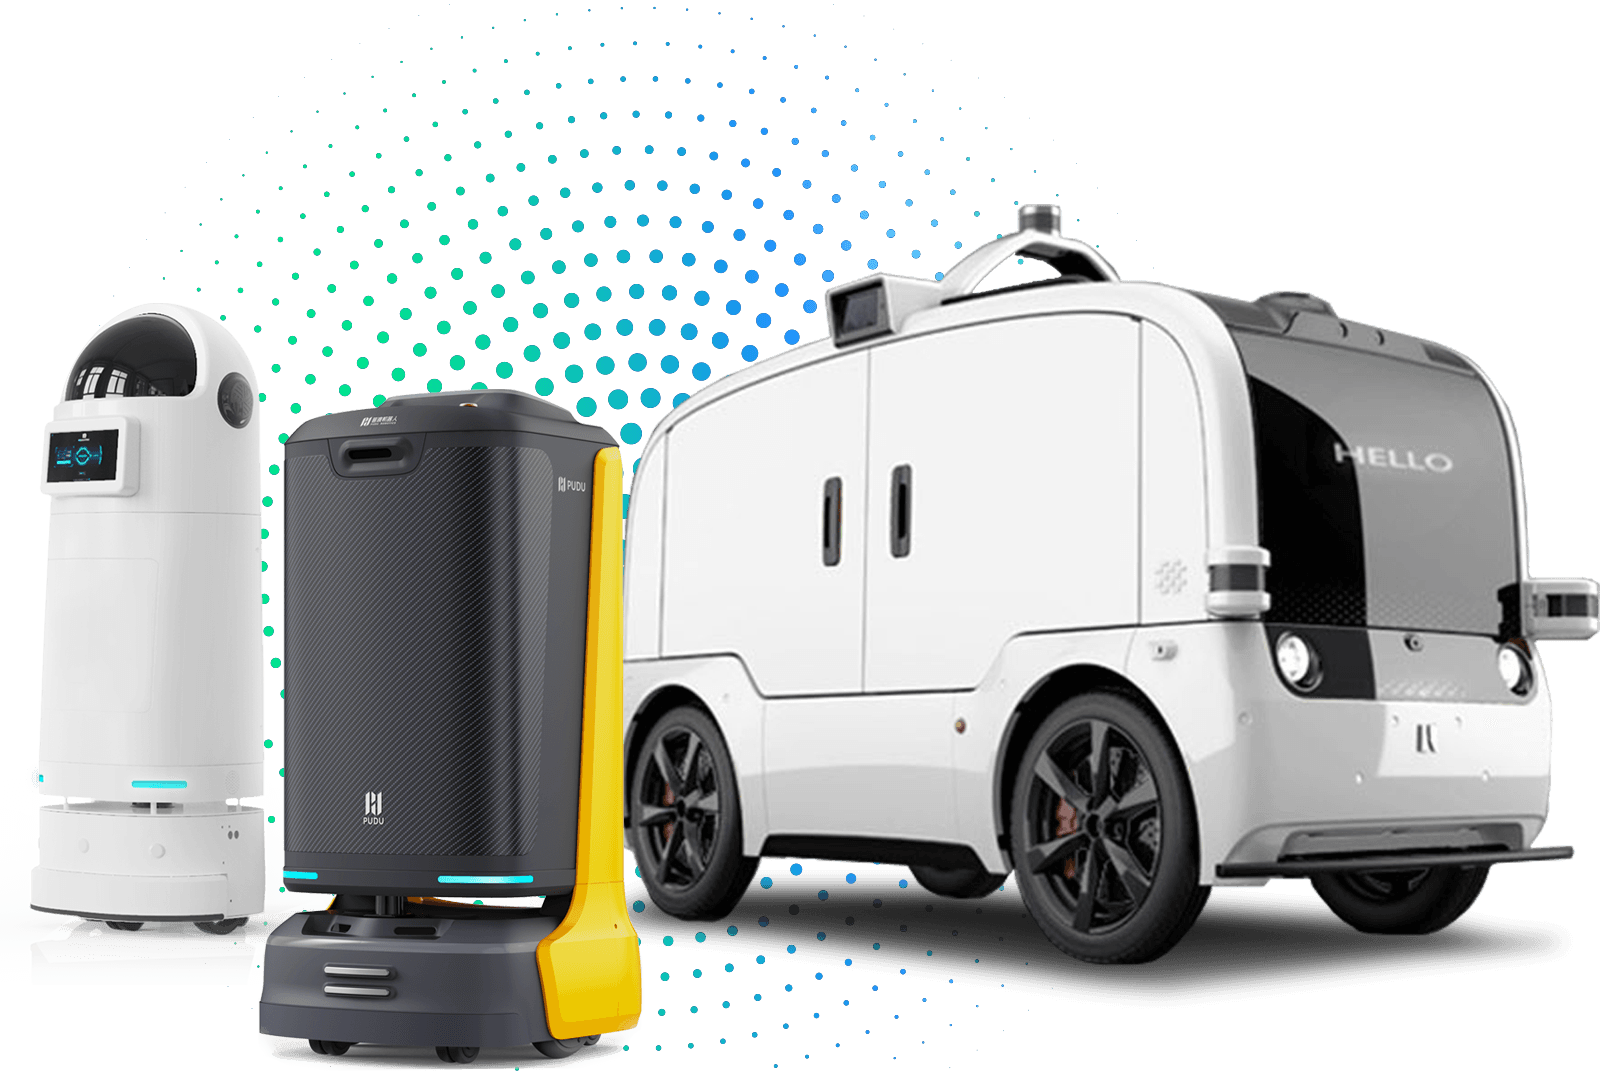 Autove | Delivery Robots | Hotel Service Robots | Singapore